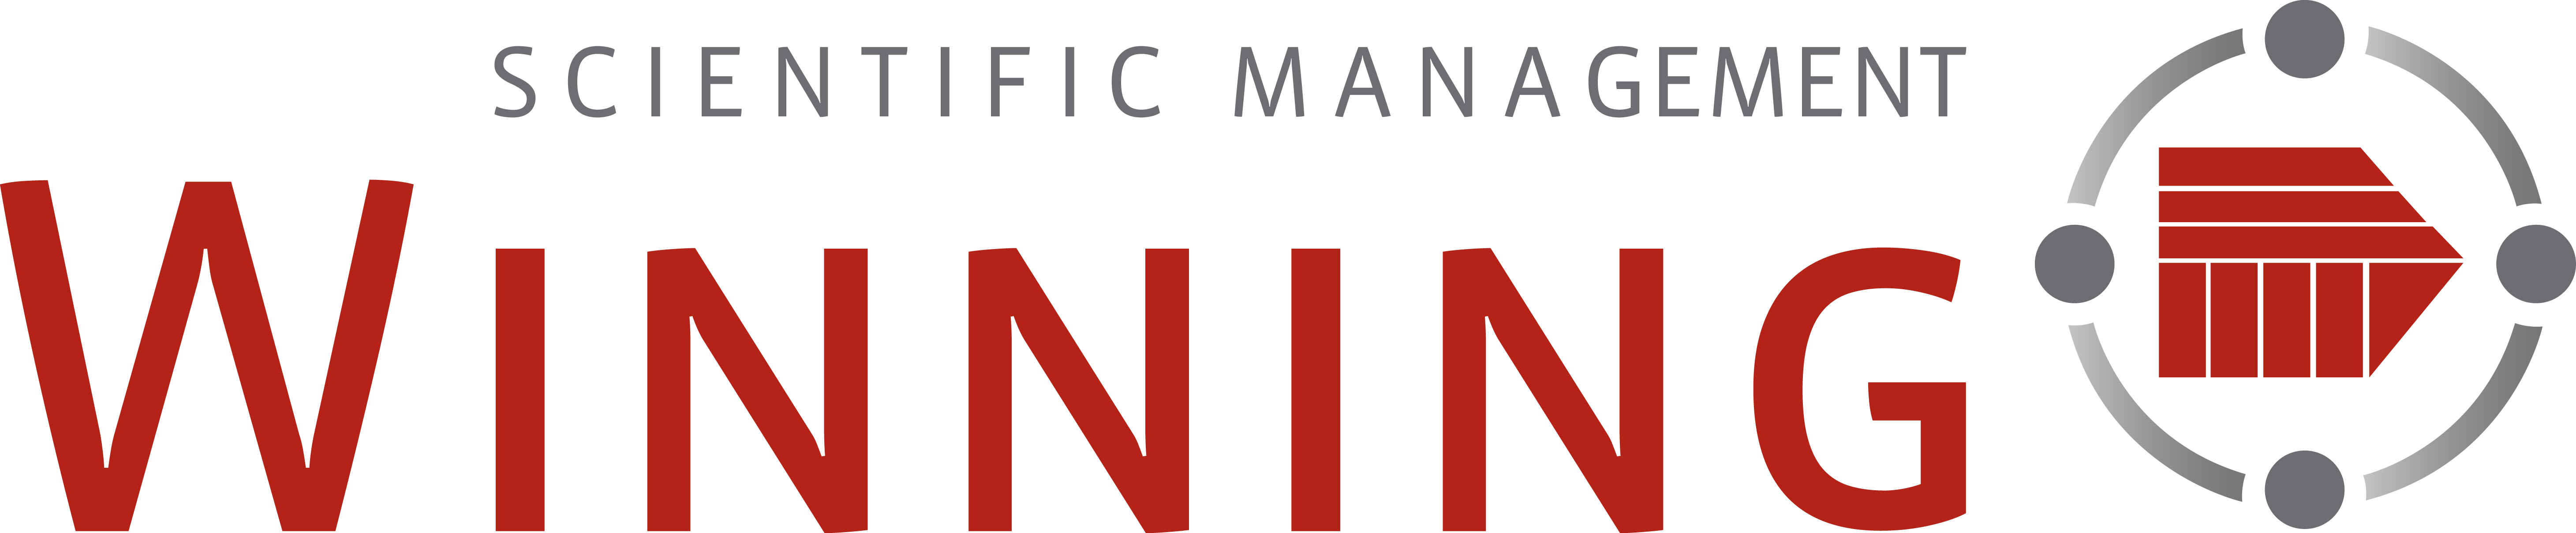 Winning Scientific Management Logo